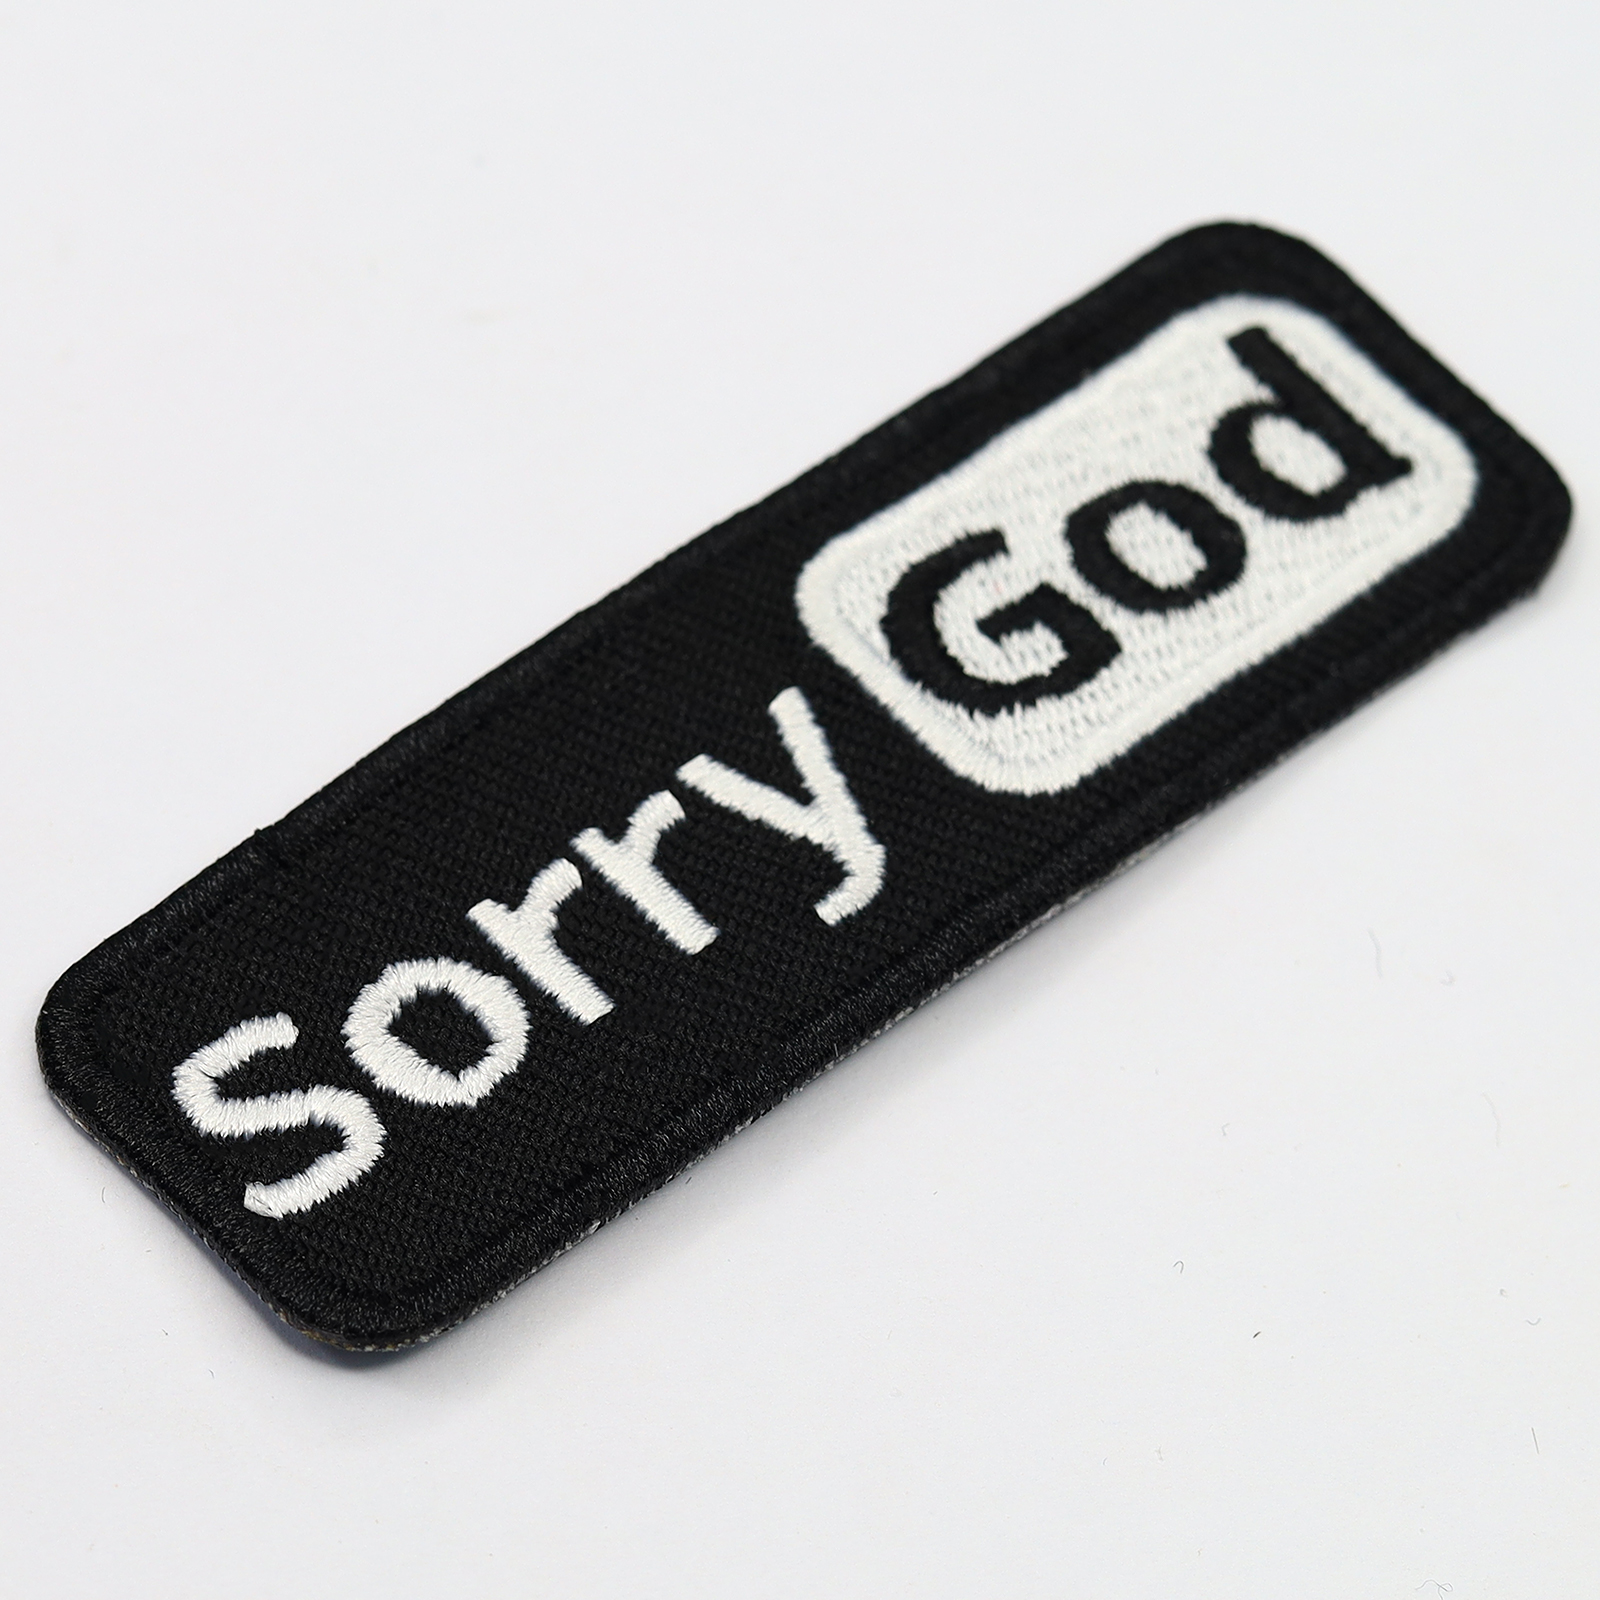 Sorry God - Patch